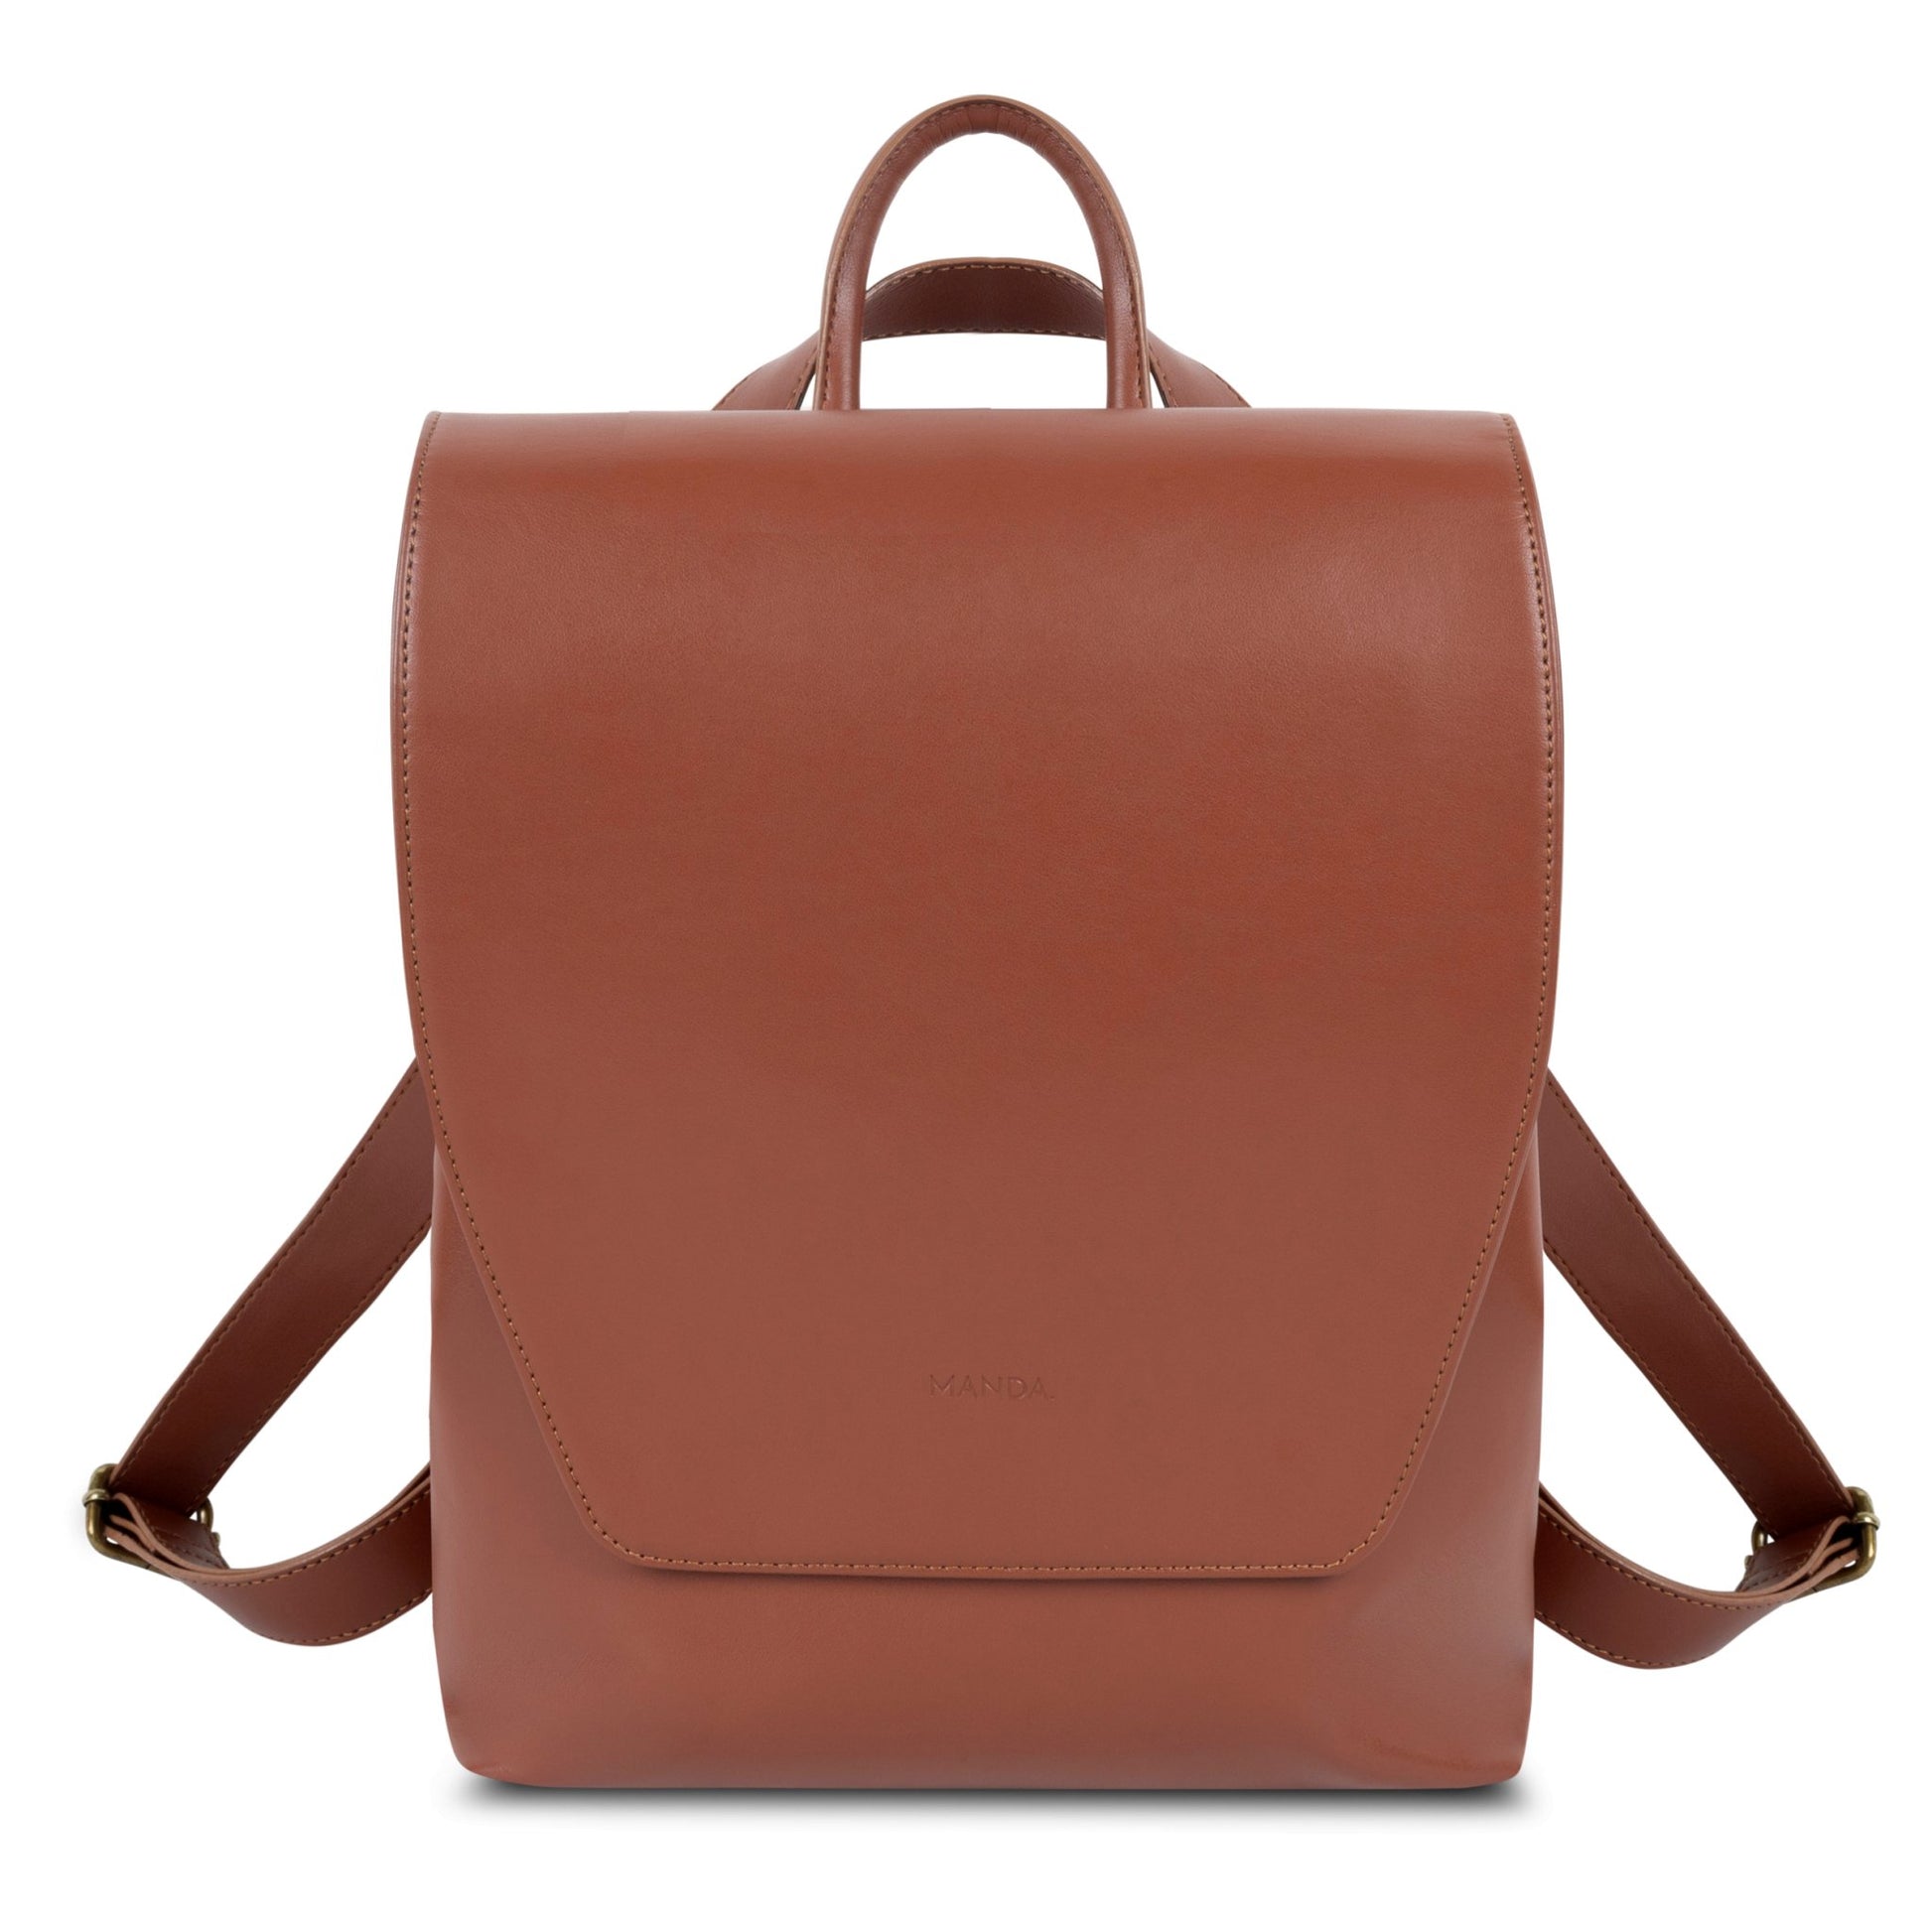 Matt + Nat Makes Vegan Leather Handbags From Apple Waste for the